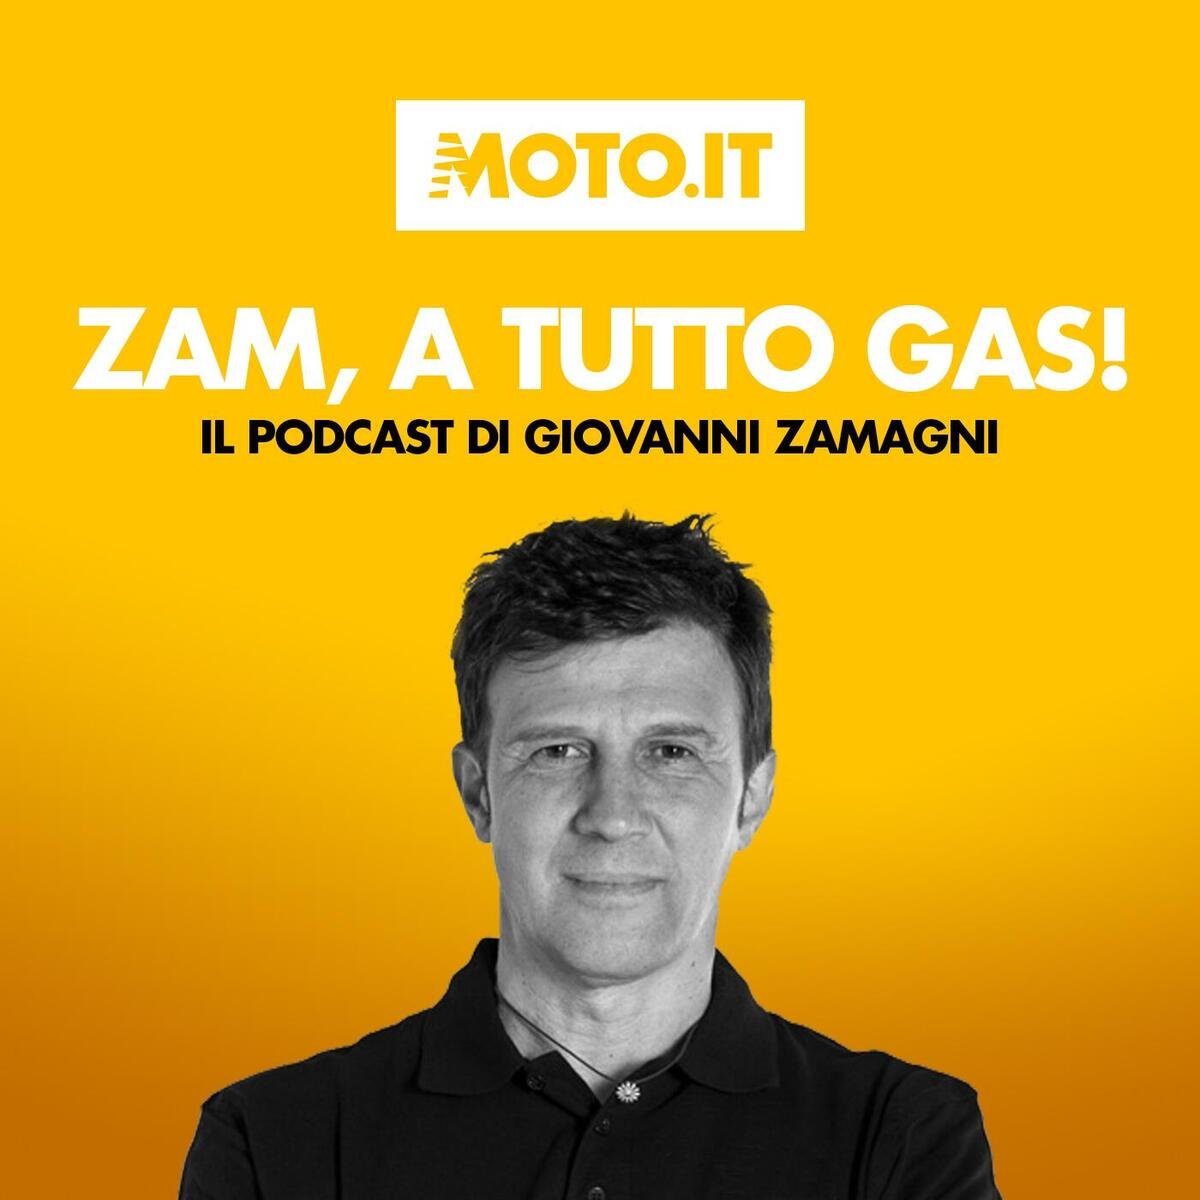 zam-a-tutto-gas-motogp-2023:-tutte-le-novità-[podcast]-–-sport-–-moto.it